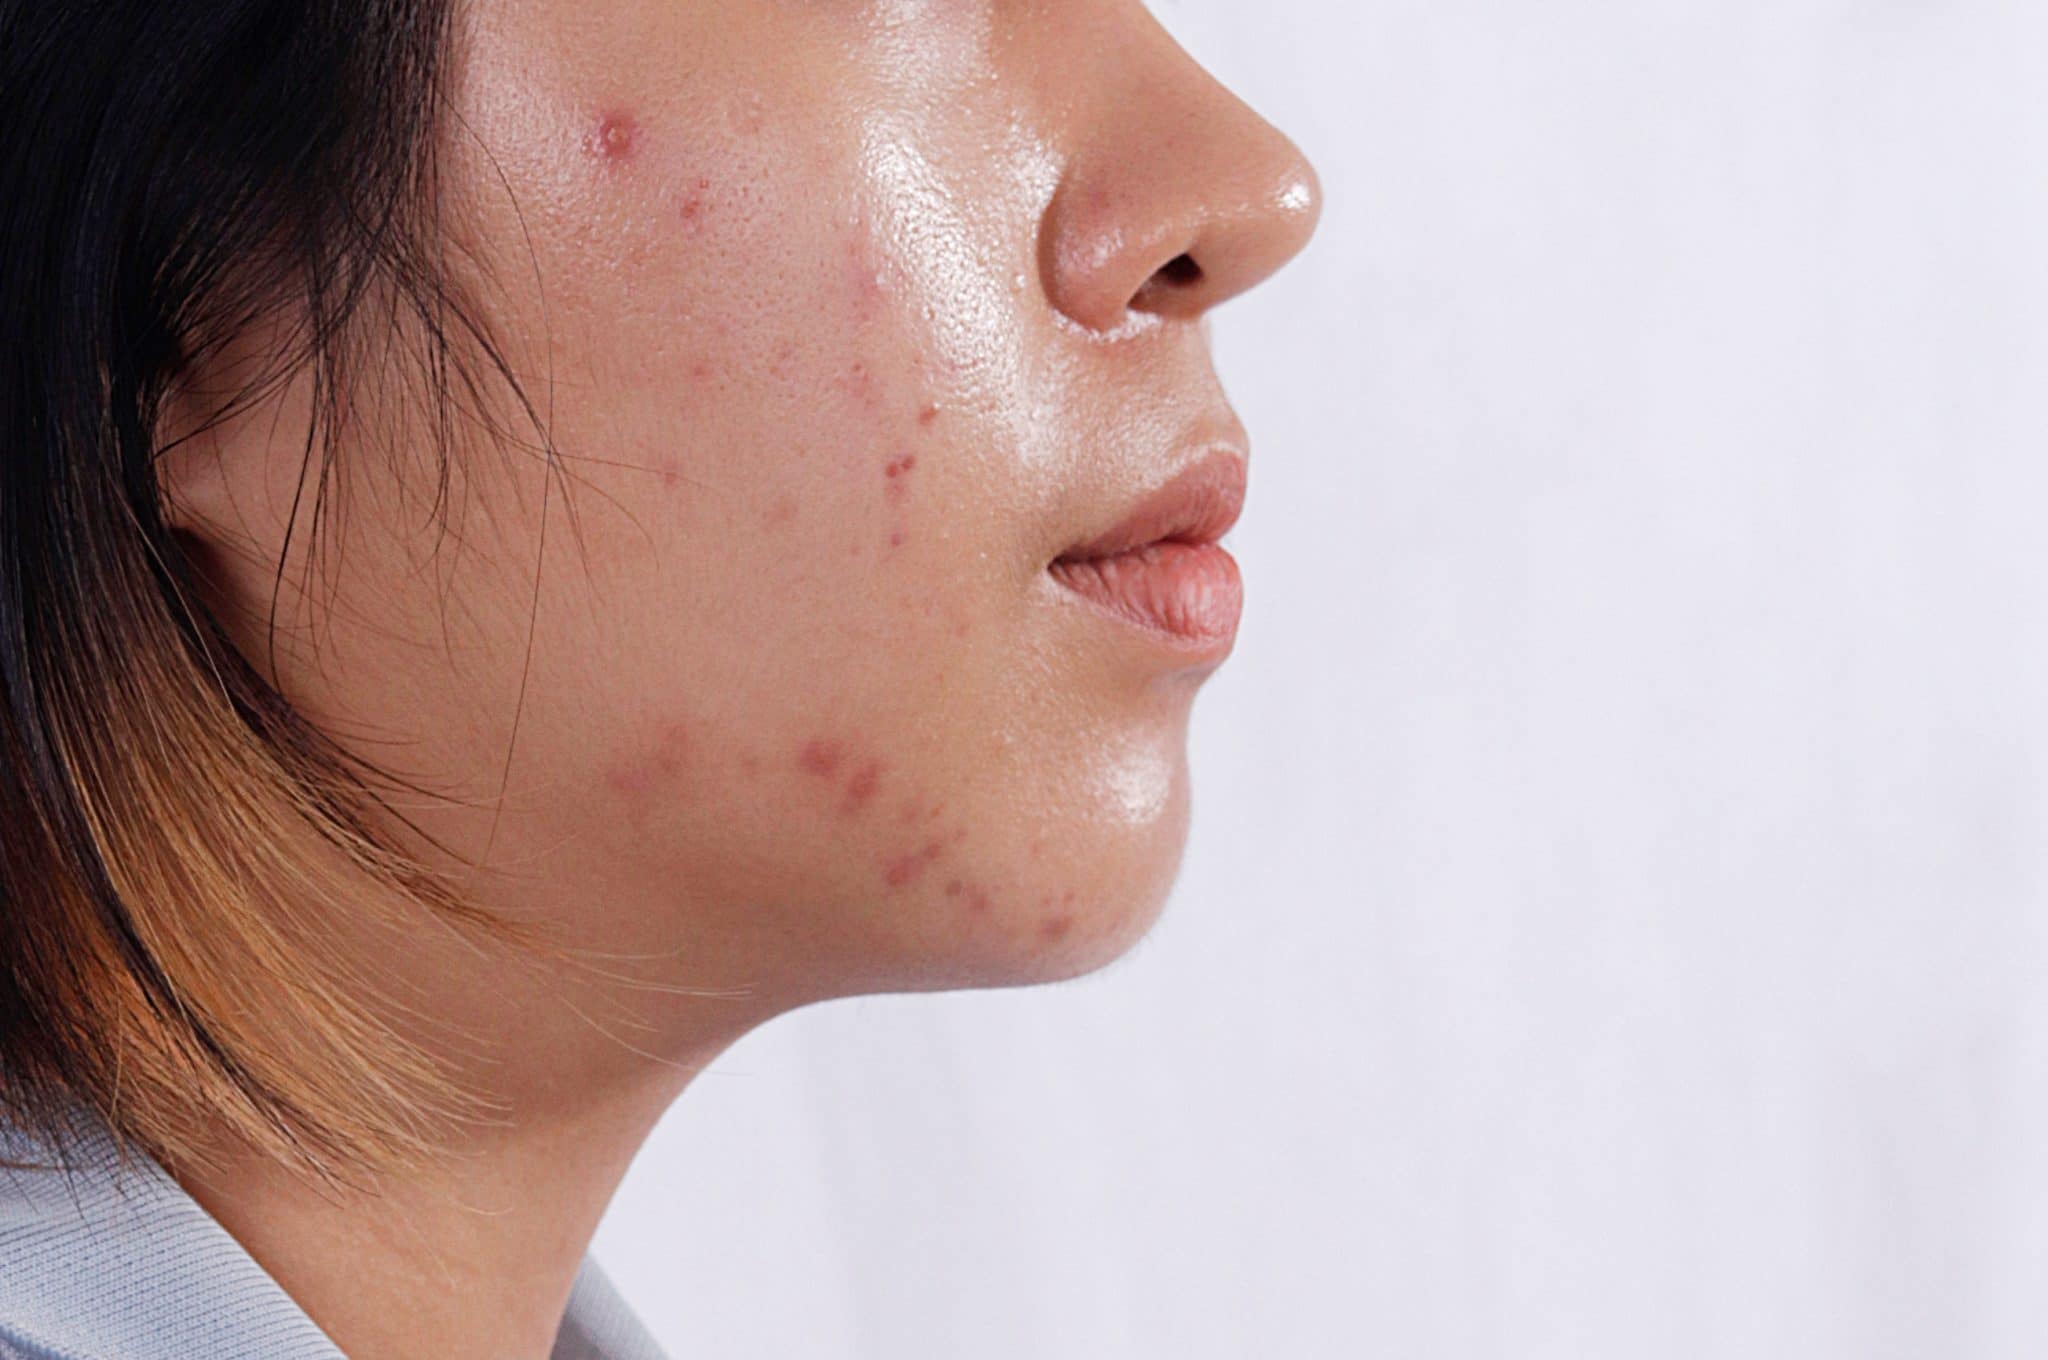 Gros plan du profil d'une femme mettant en évidence un traitement hormonal contre l'acné sur sa joue.